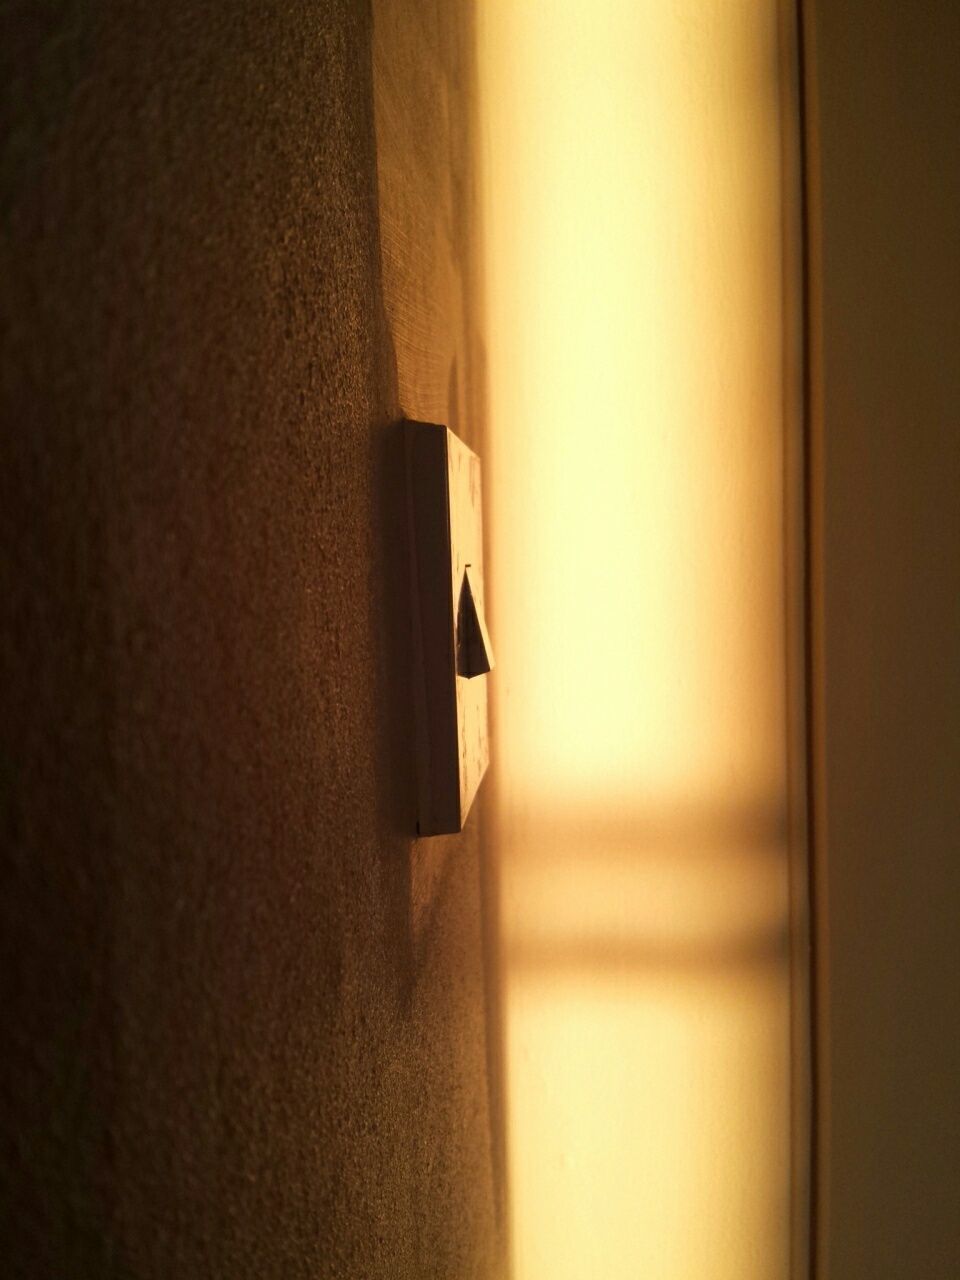 indoors, door, shadow, sunlight, no people, day, close-up